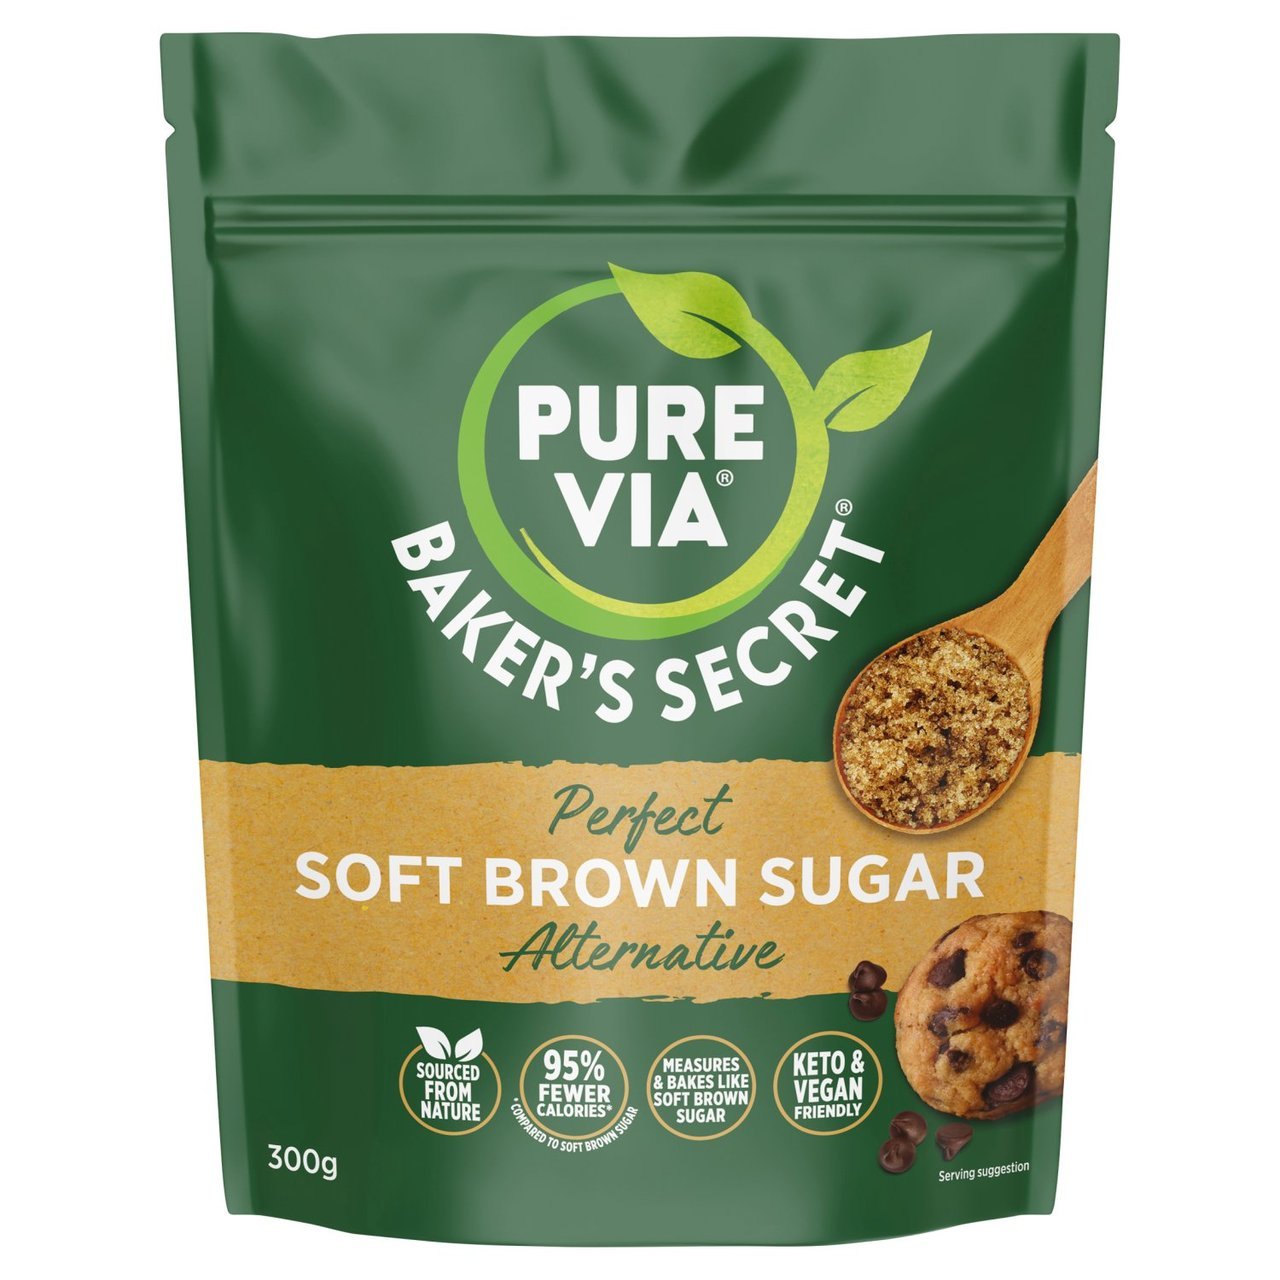 Pure Via Bakers Secret Alternatief voor zachte bruine suiker - theskinnyfoodco